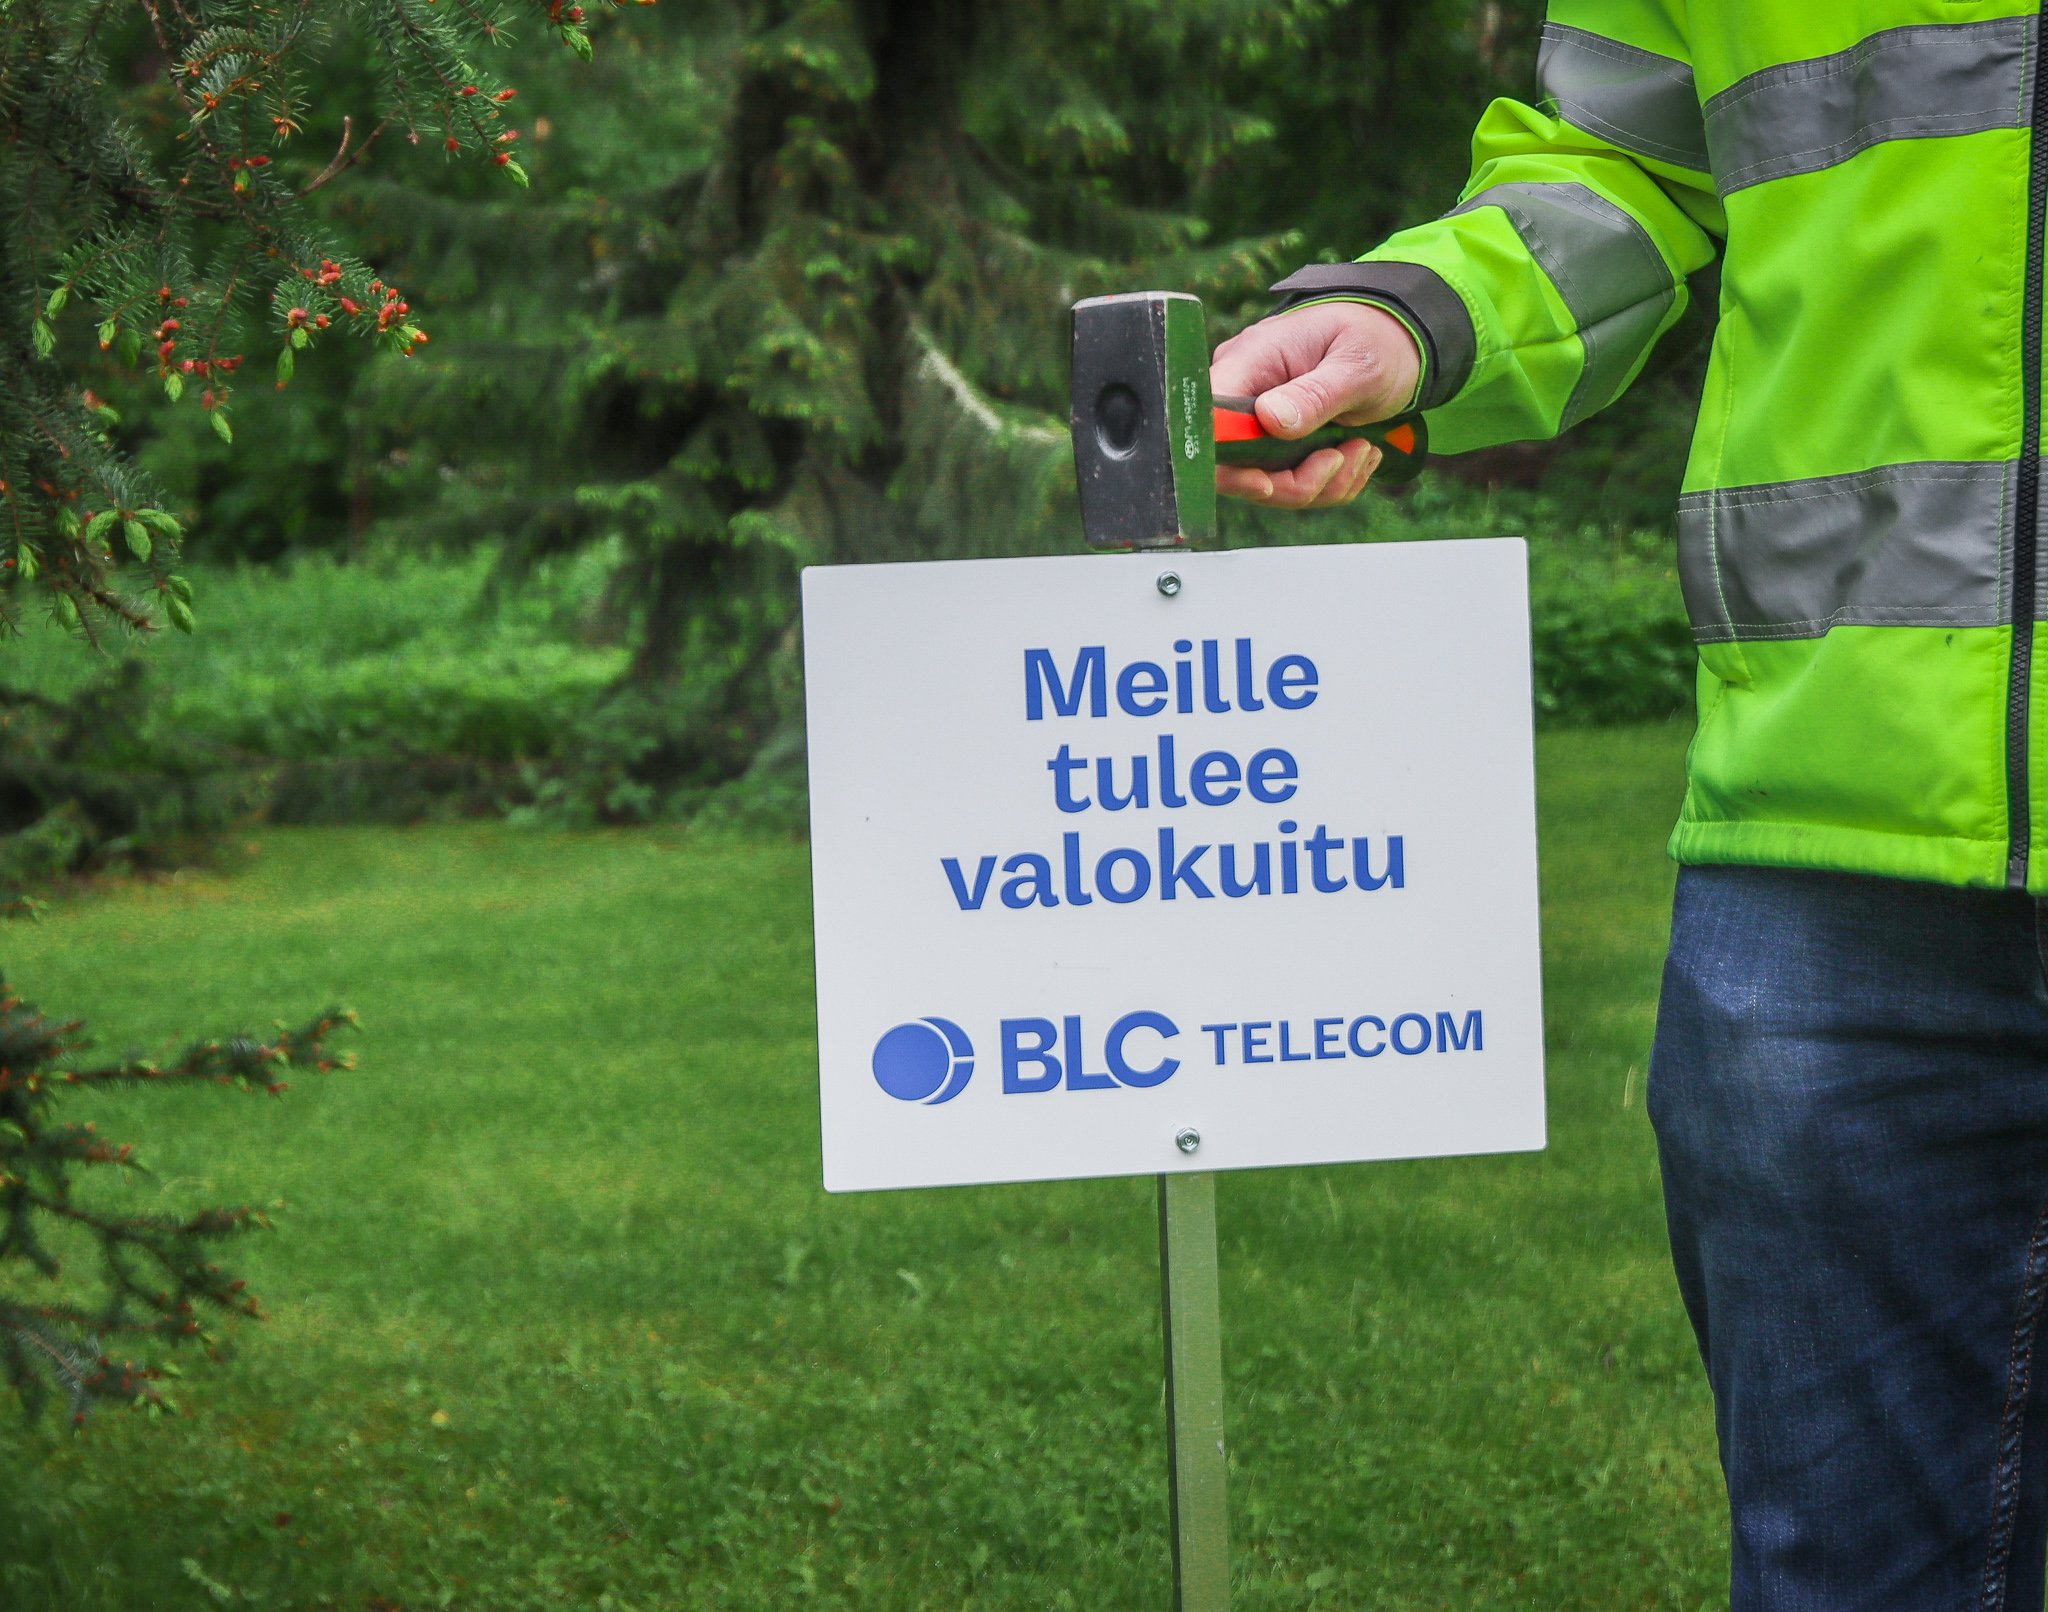 BLC_Telecom_valokuitu